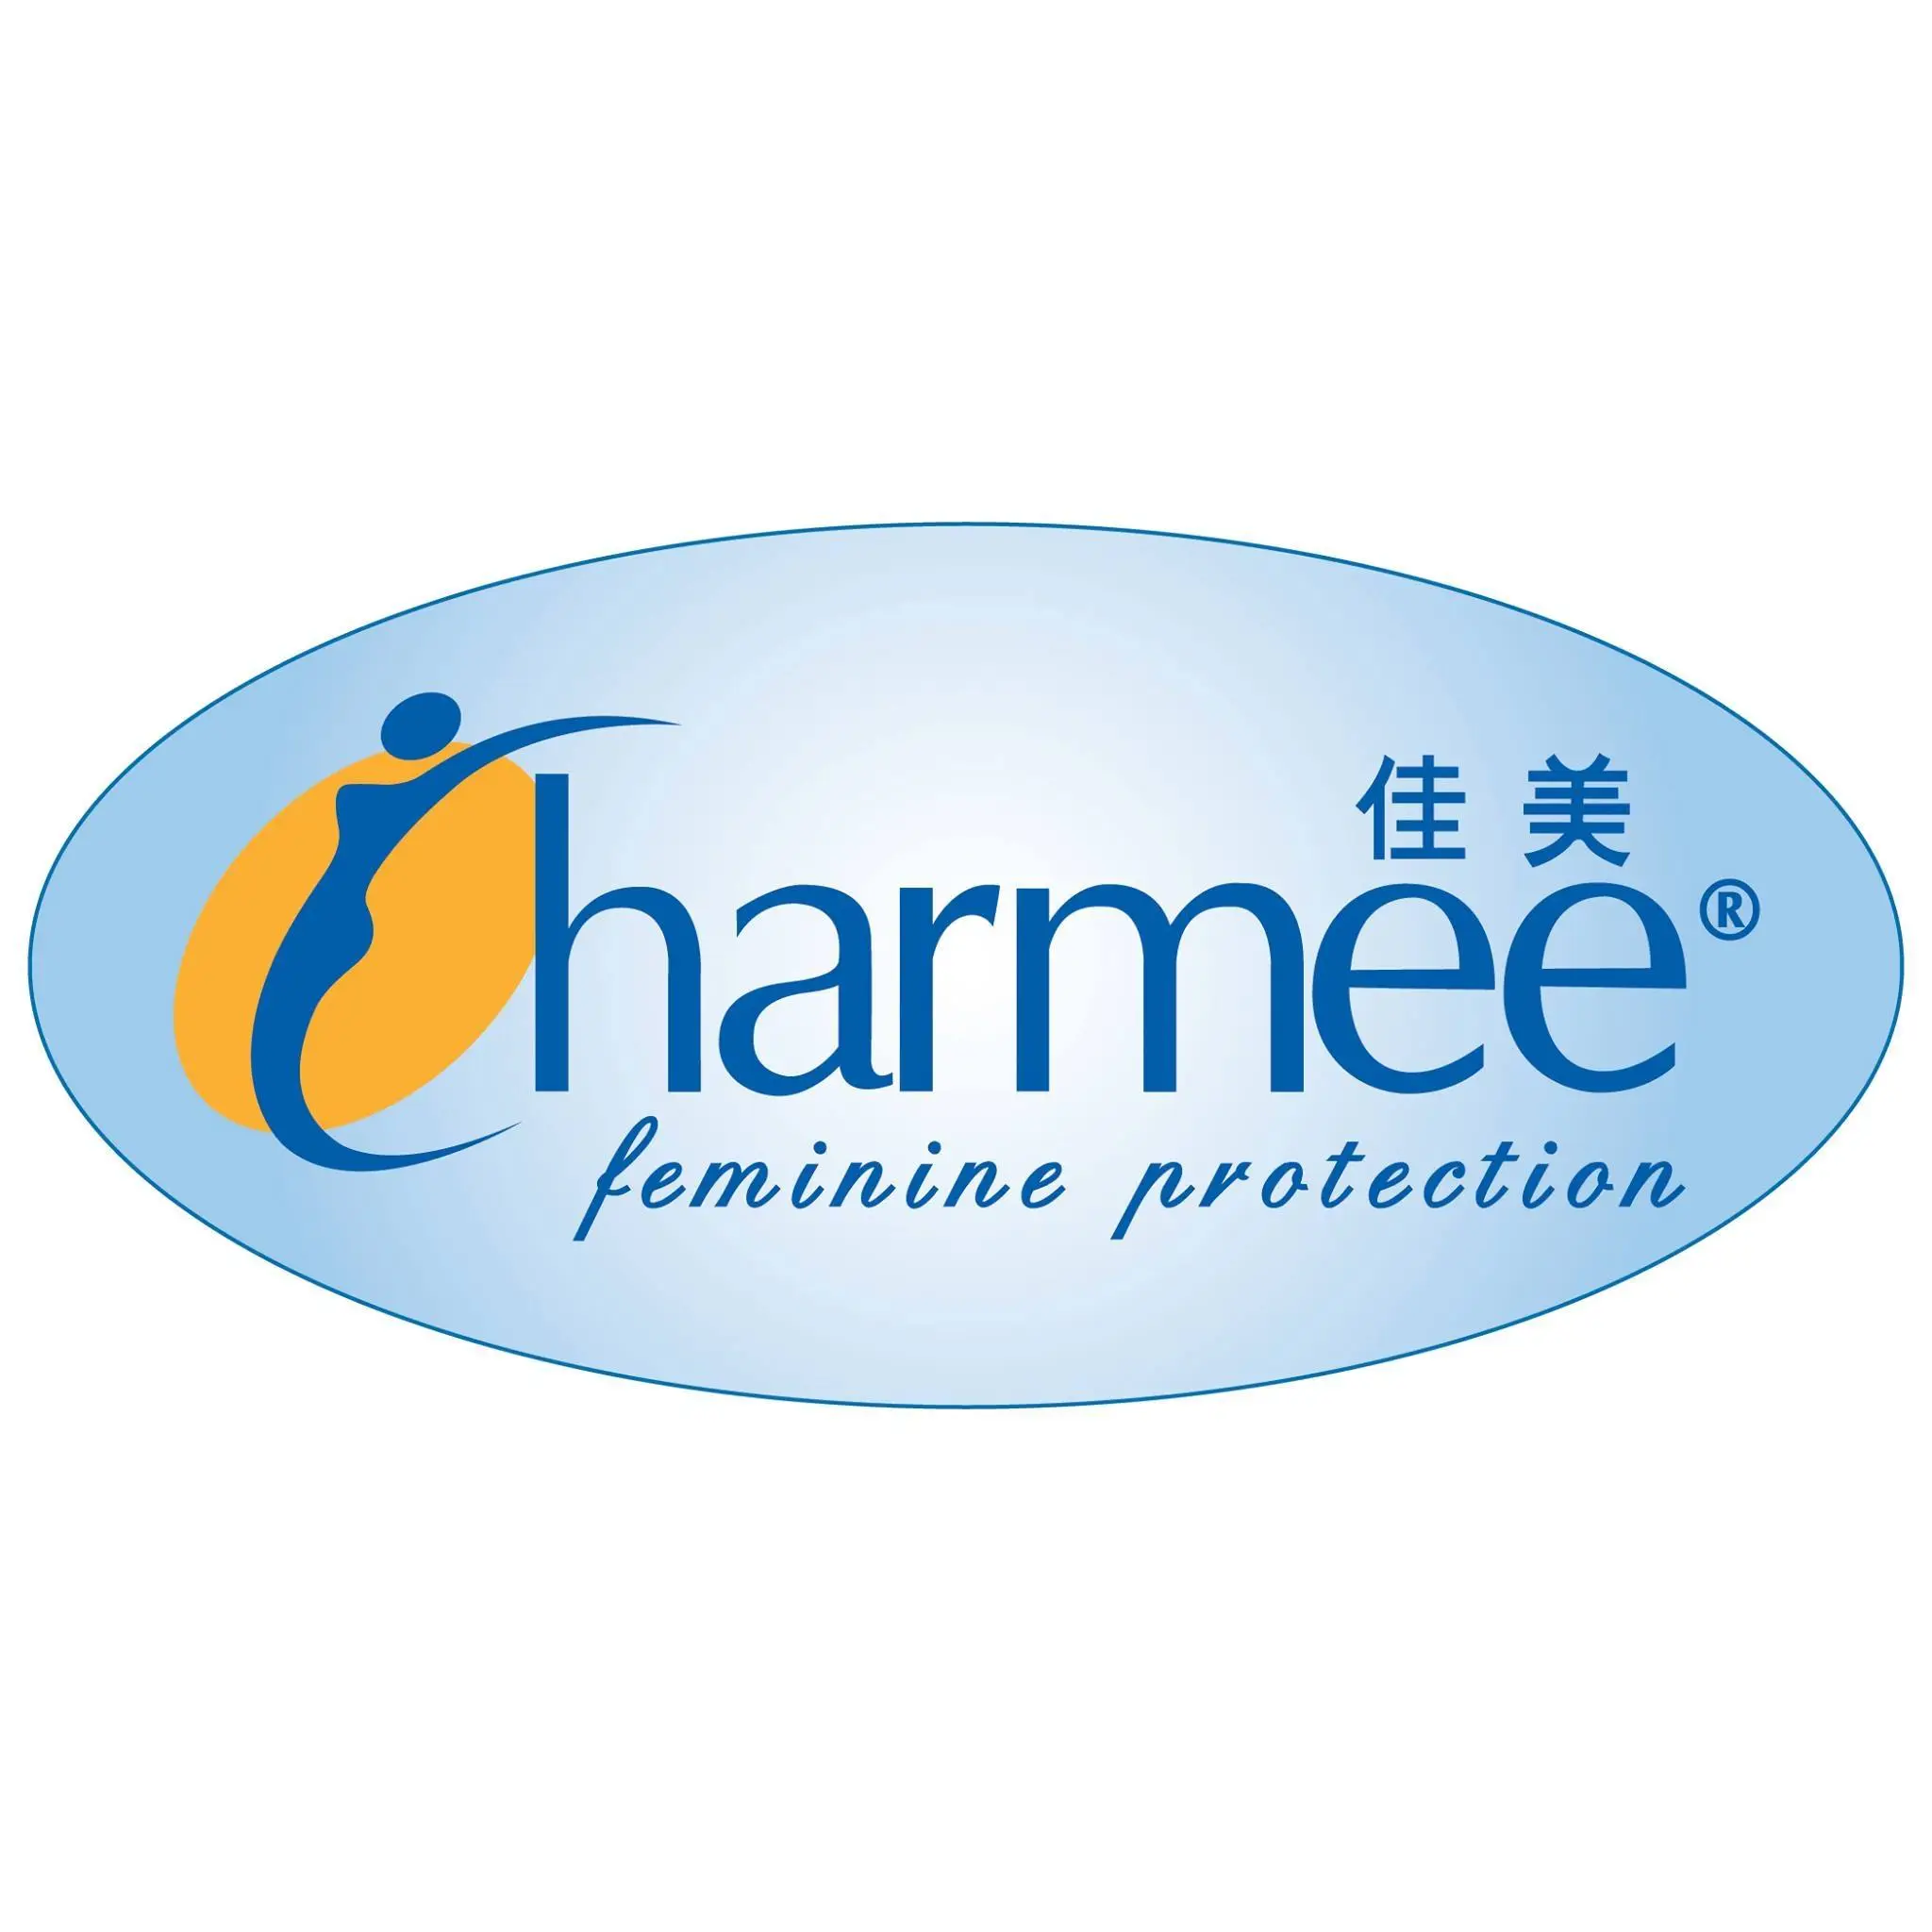 Charmee Logo